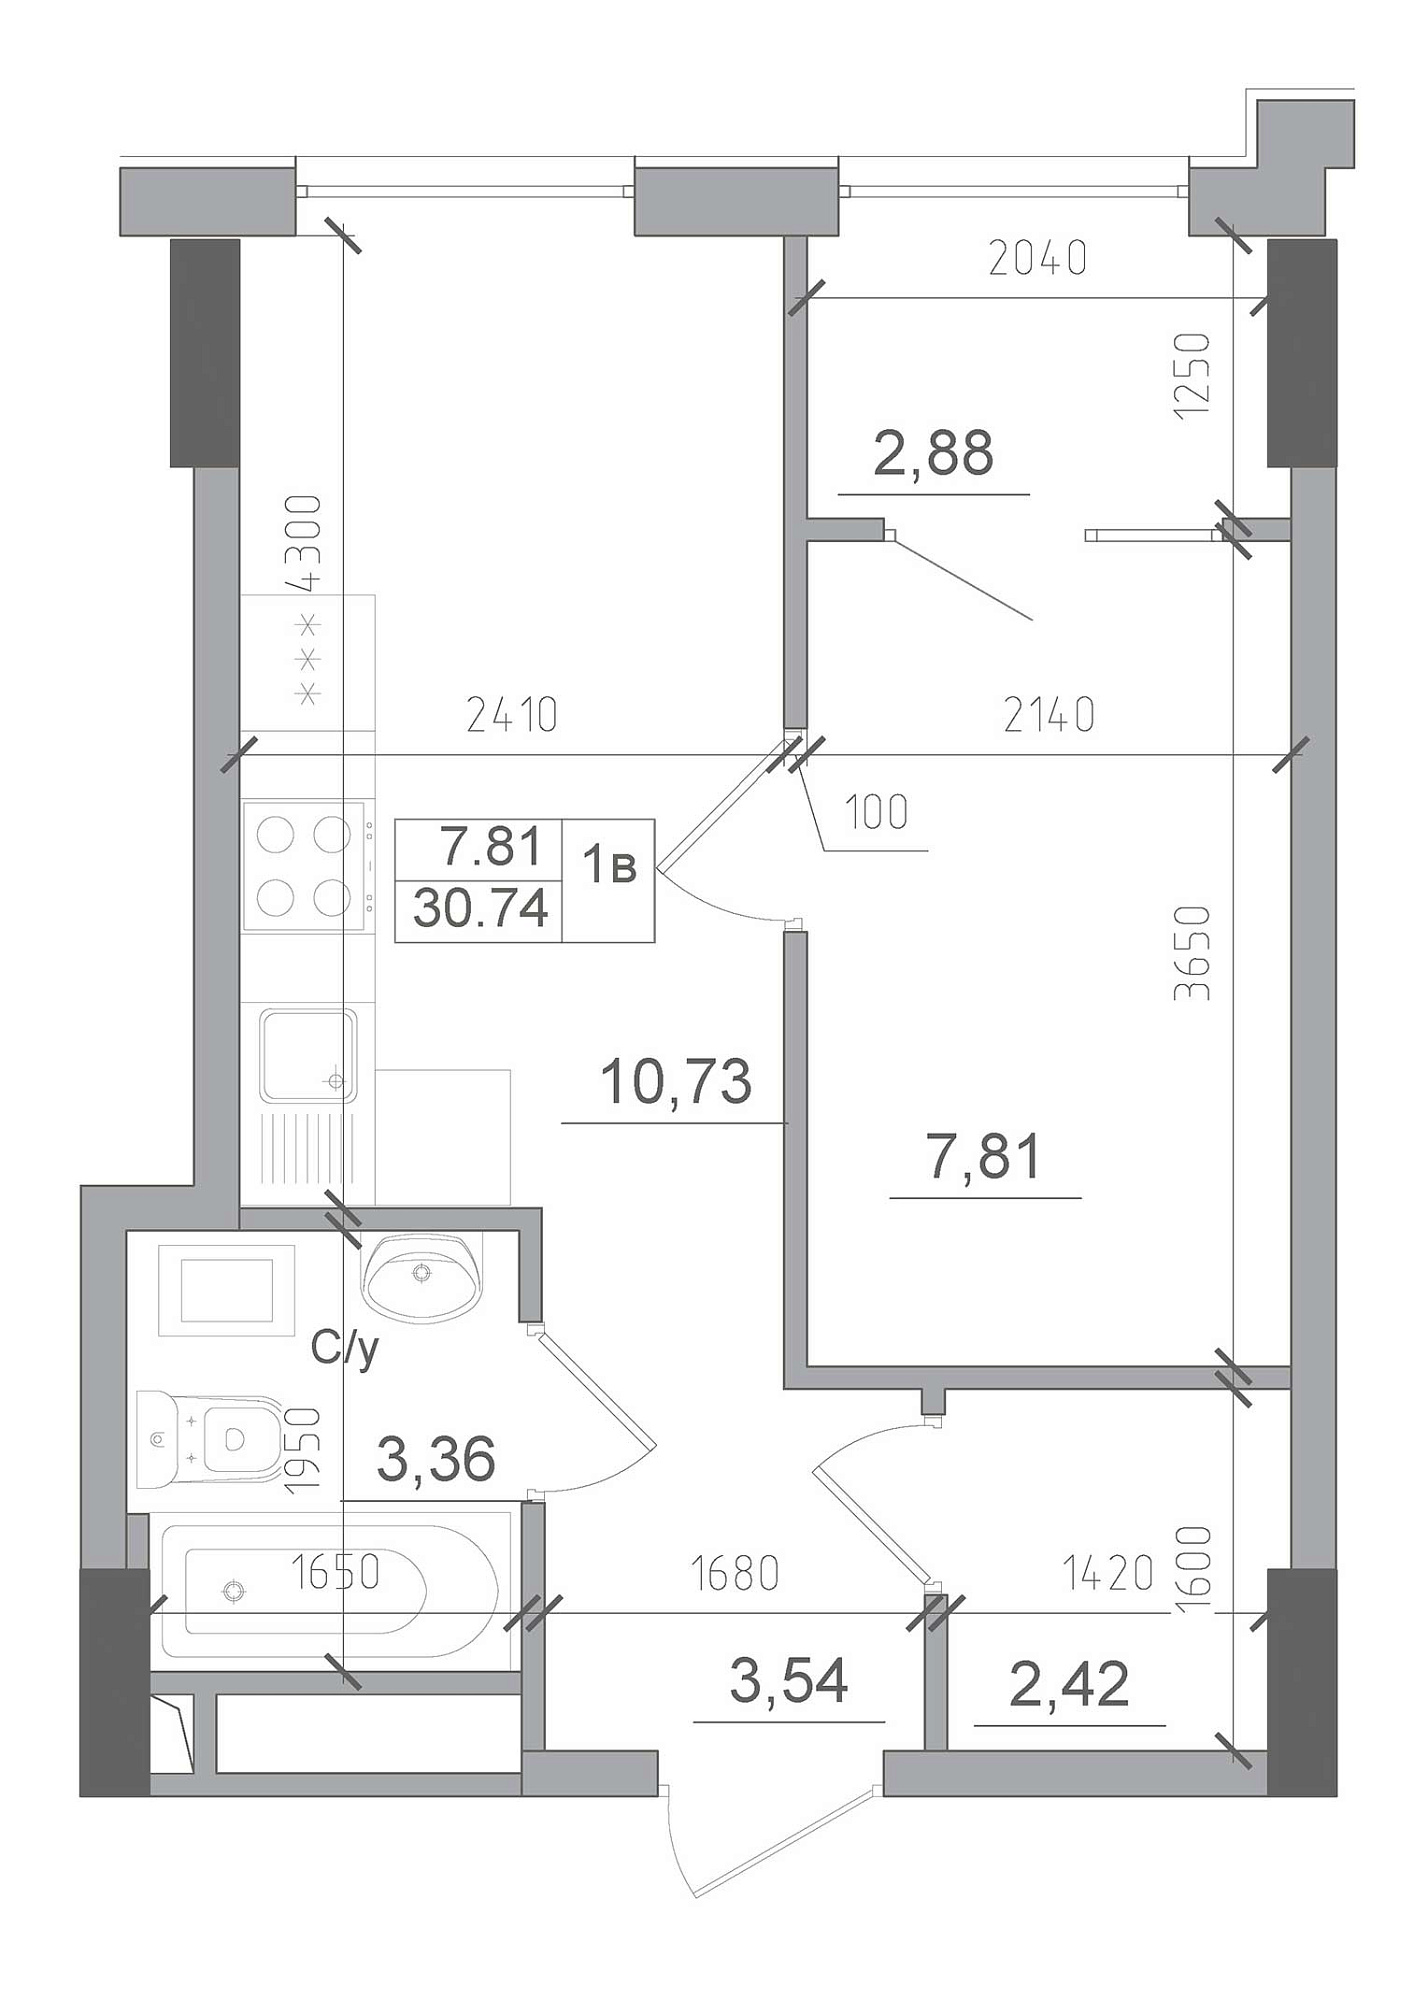 Планування 1-к квартира площею 30.74м2, AB-22-03/00003.